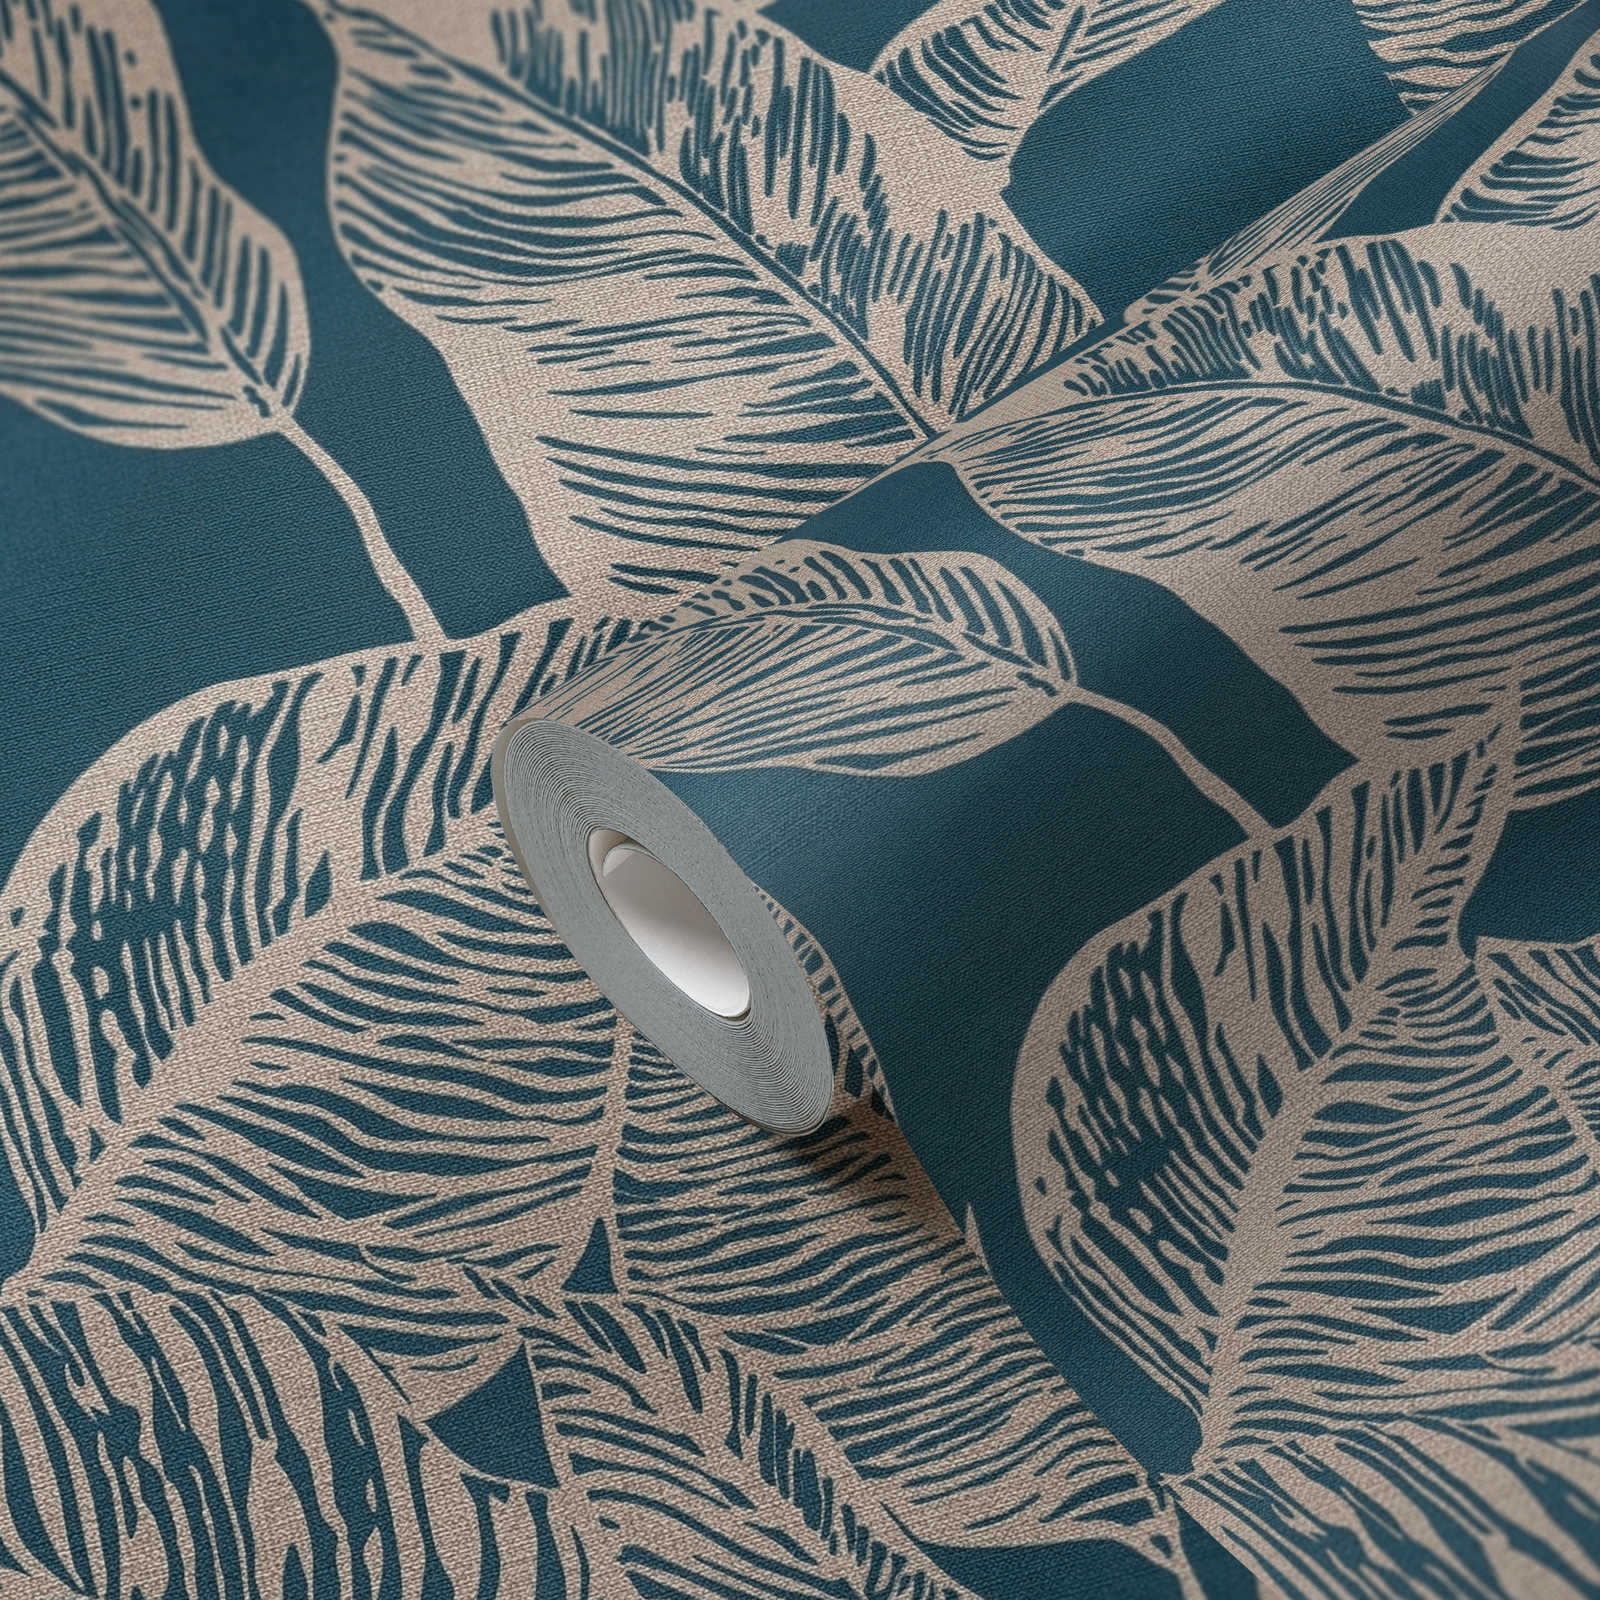             Papel pintado no tejido con motivo de hojas Sin PVC - azul, marrón
        